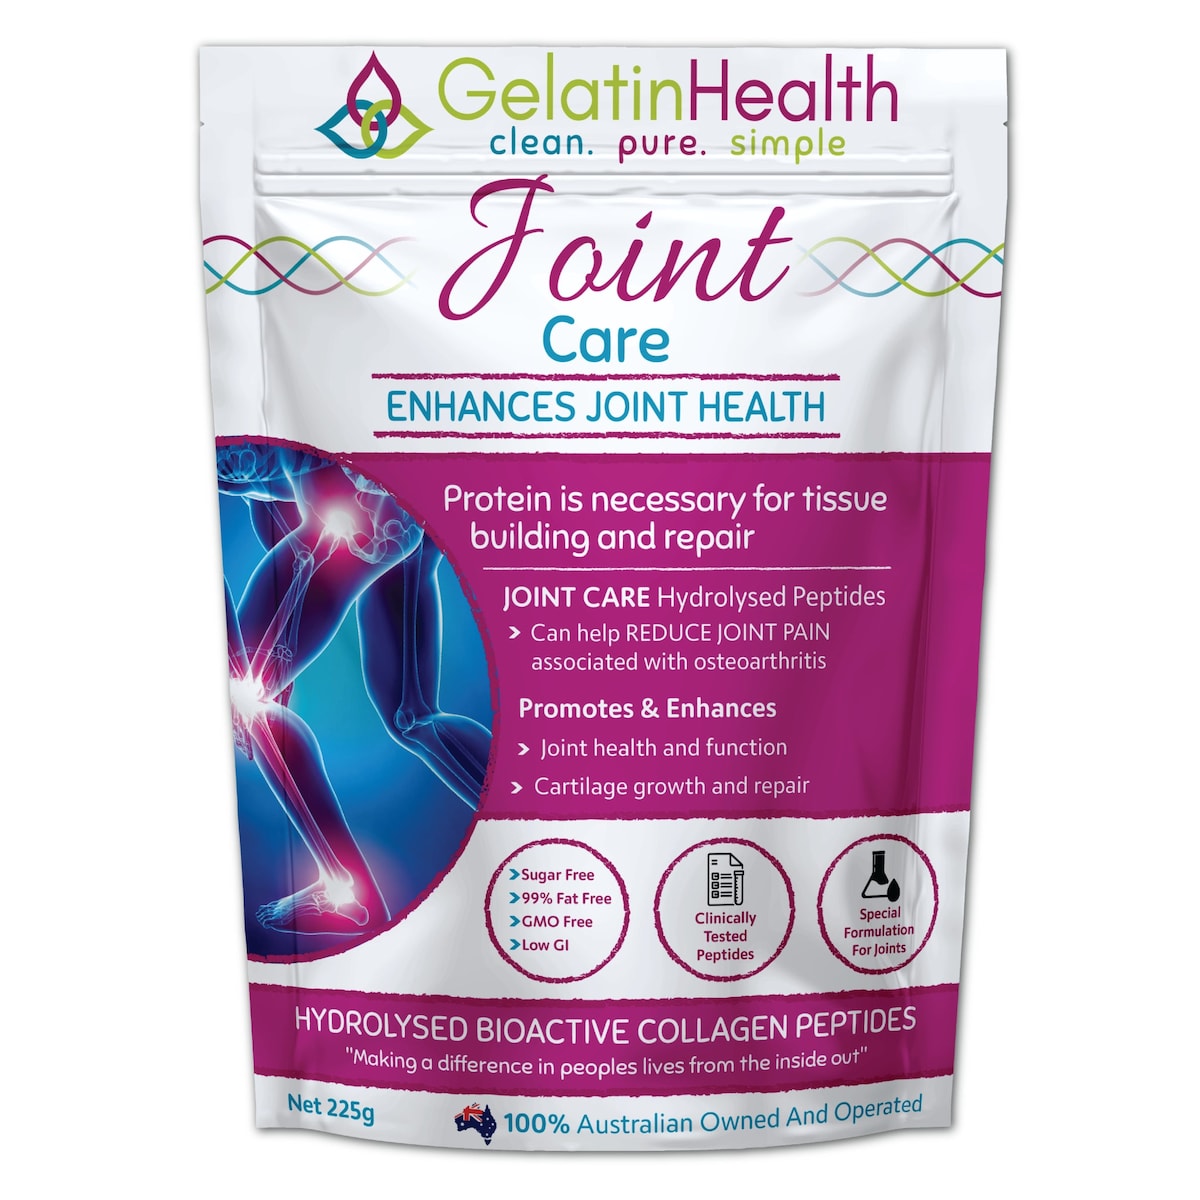 Gelatin Health Joint Collagen 450g